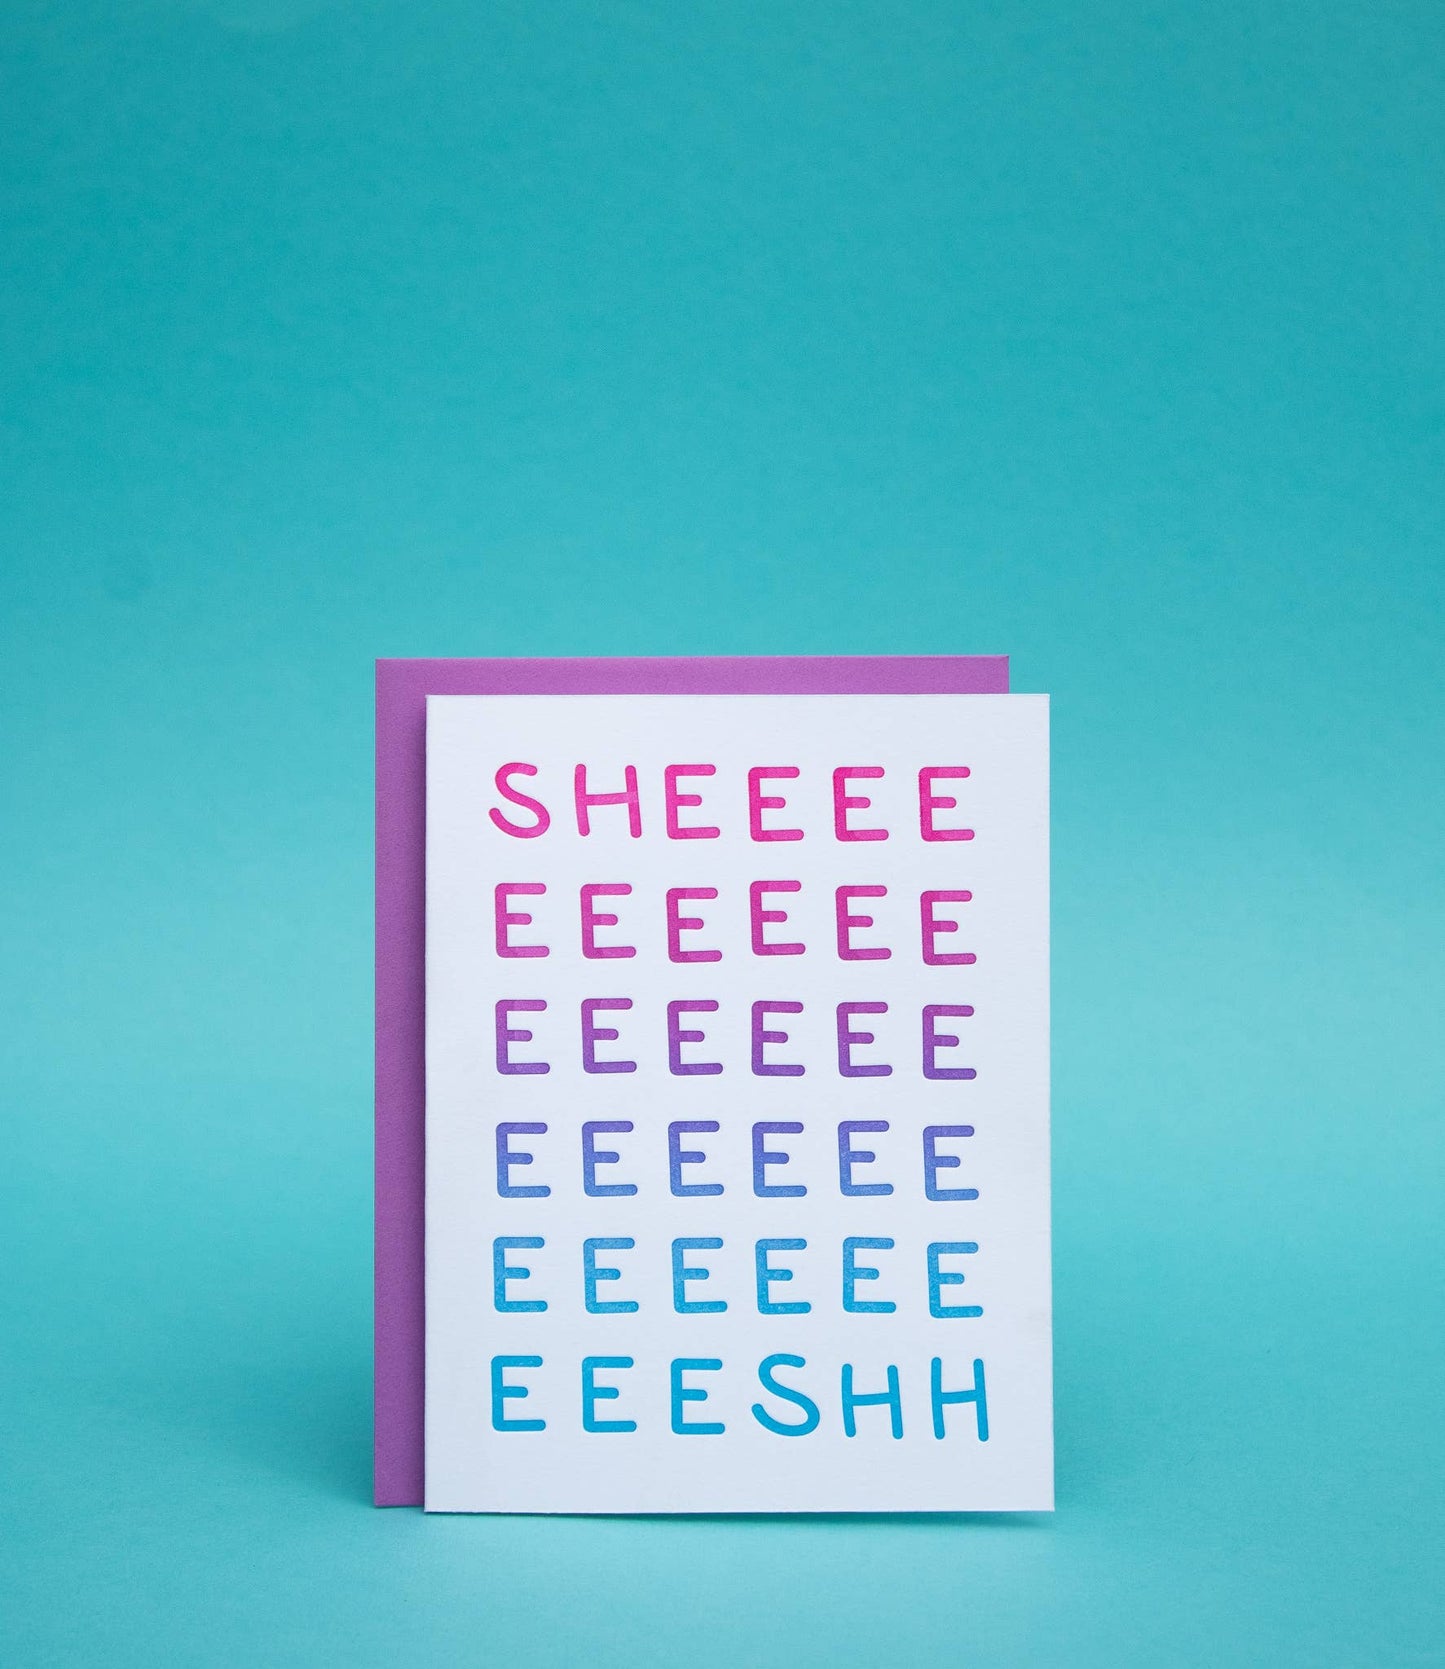 Letterpress Greeting Card; Sheeeeesh By M.C. Pressure